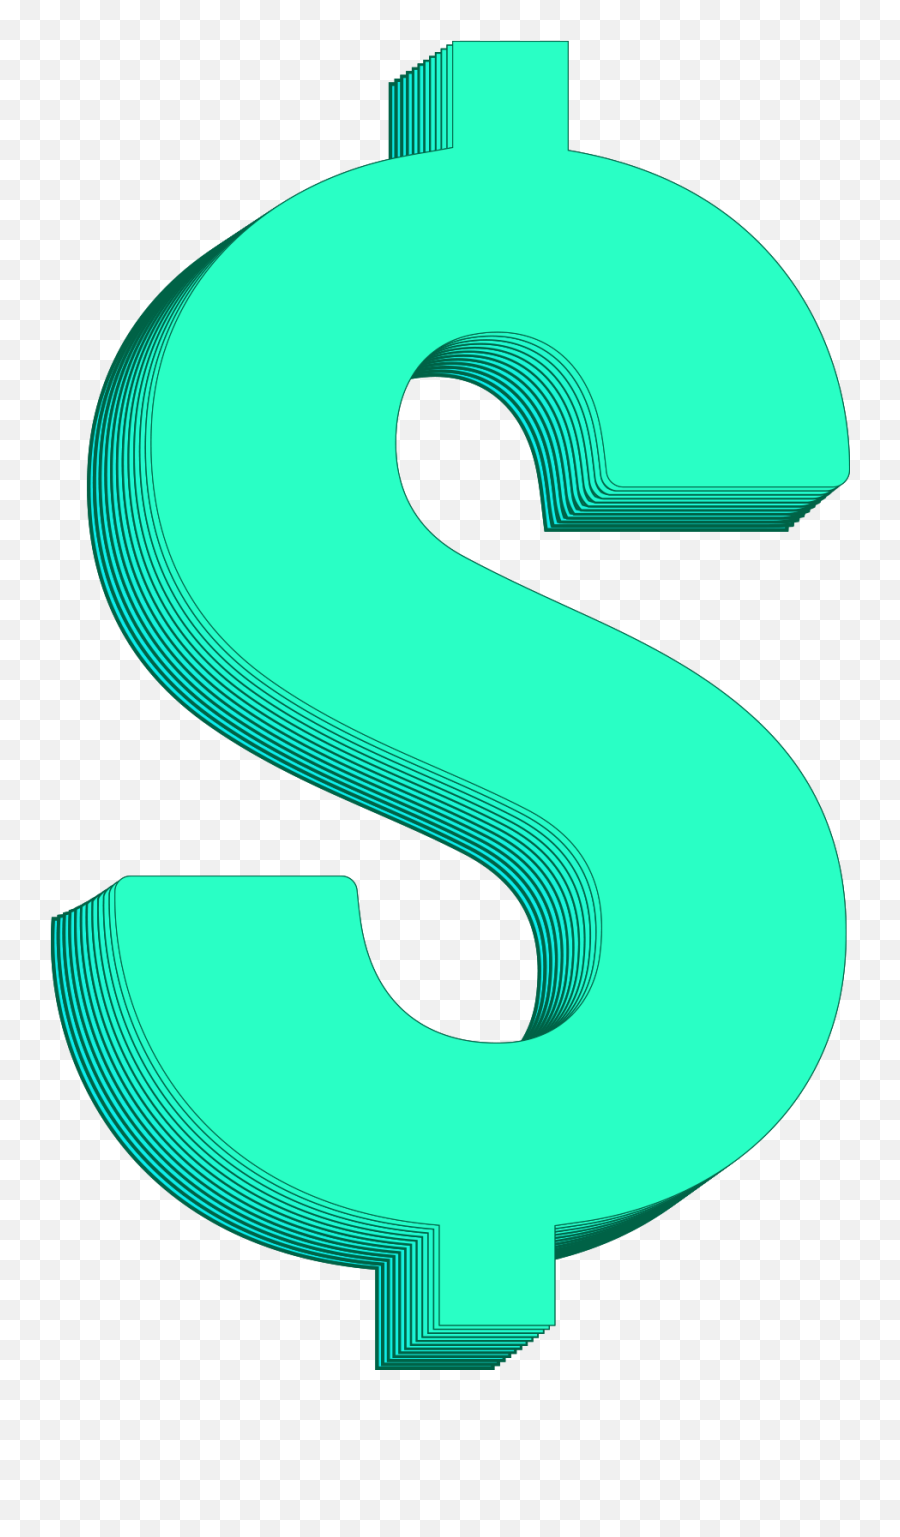 Dollar Symbol Png Image Free Download - Vertical Emoji,Dollar Eyes Emoji